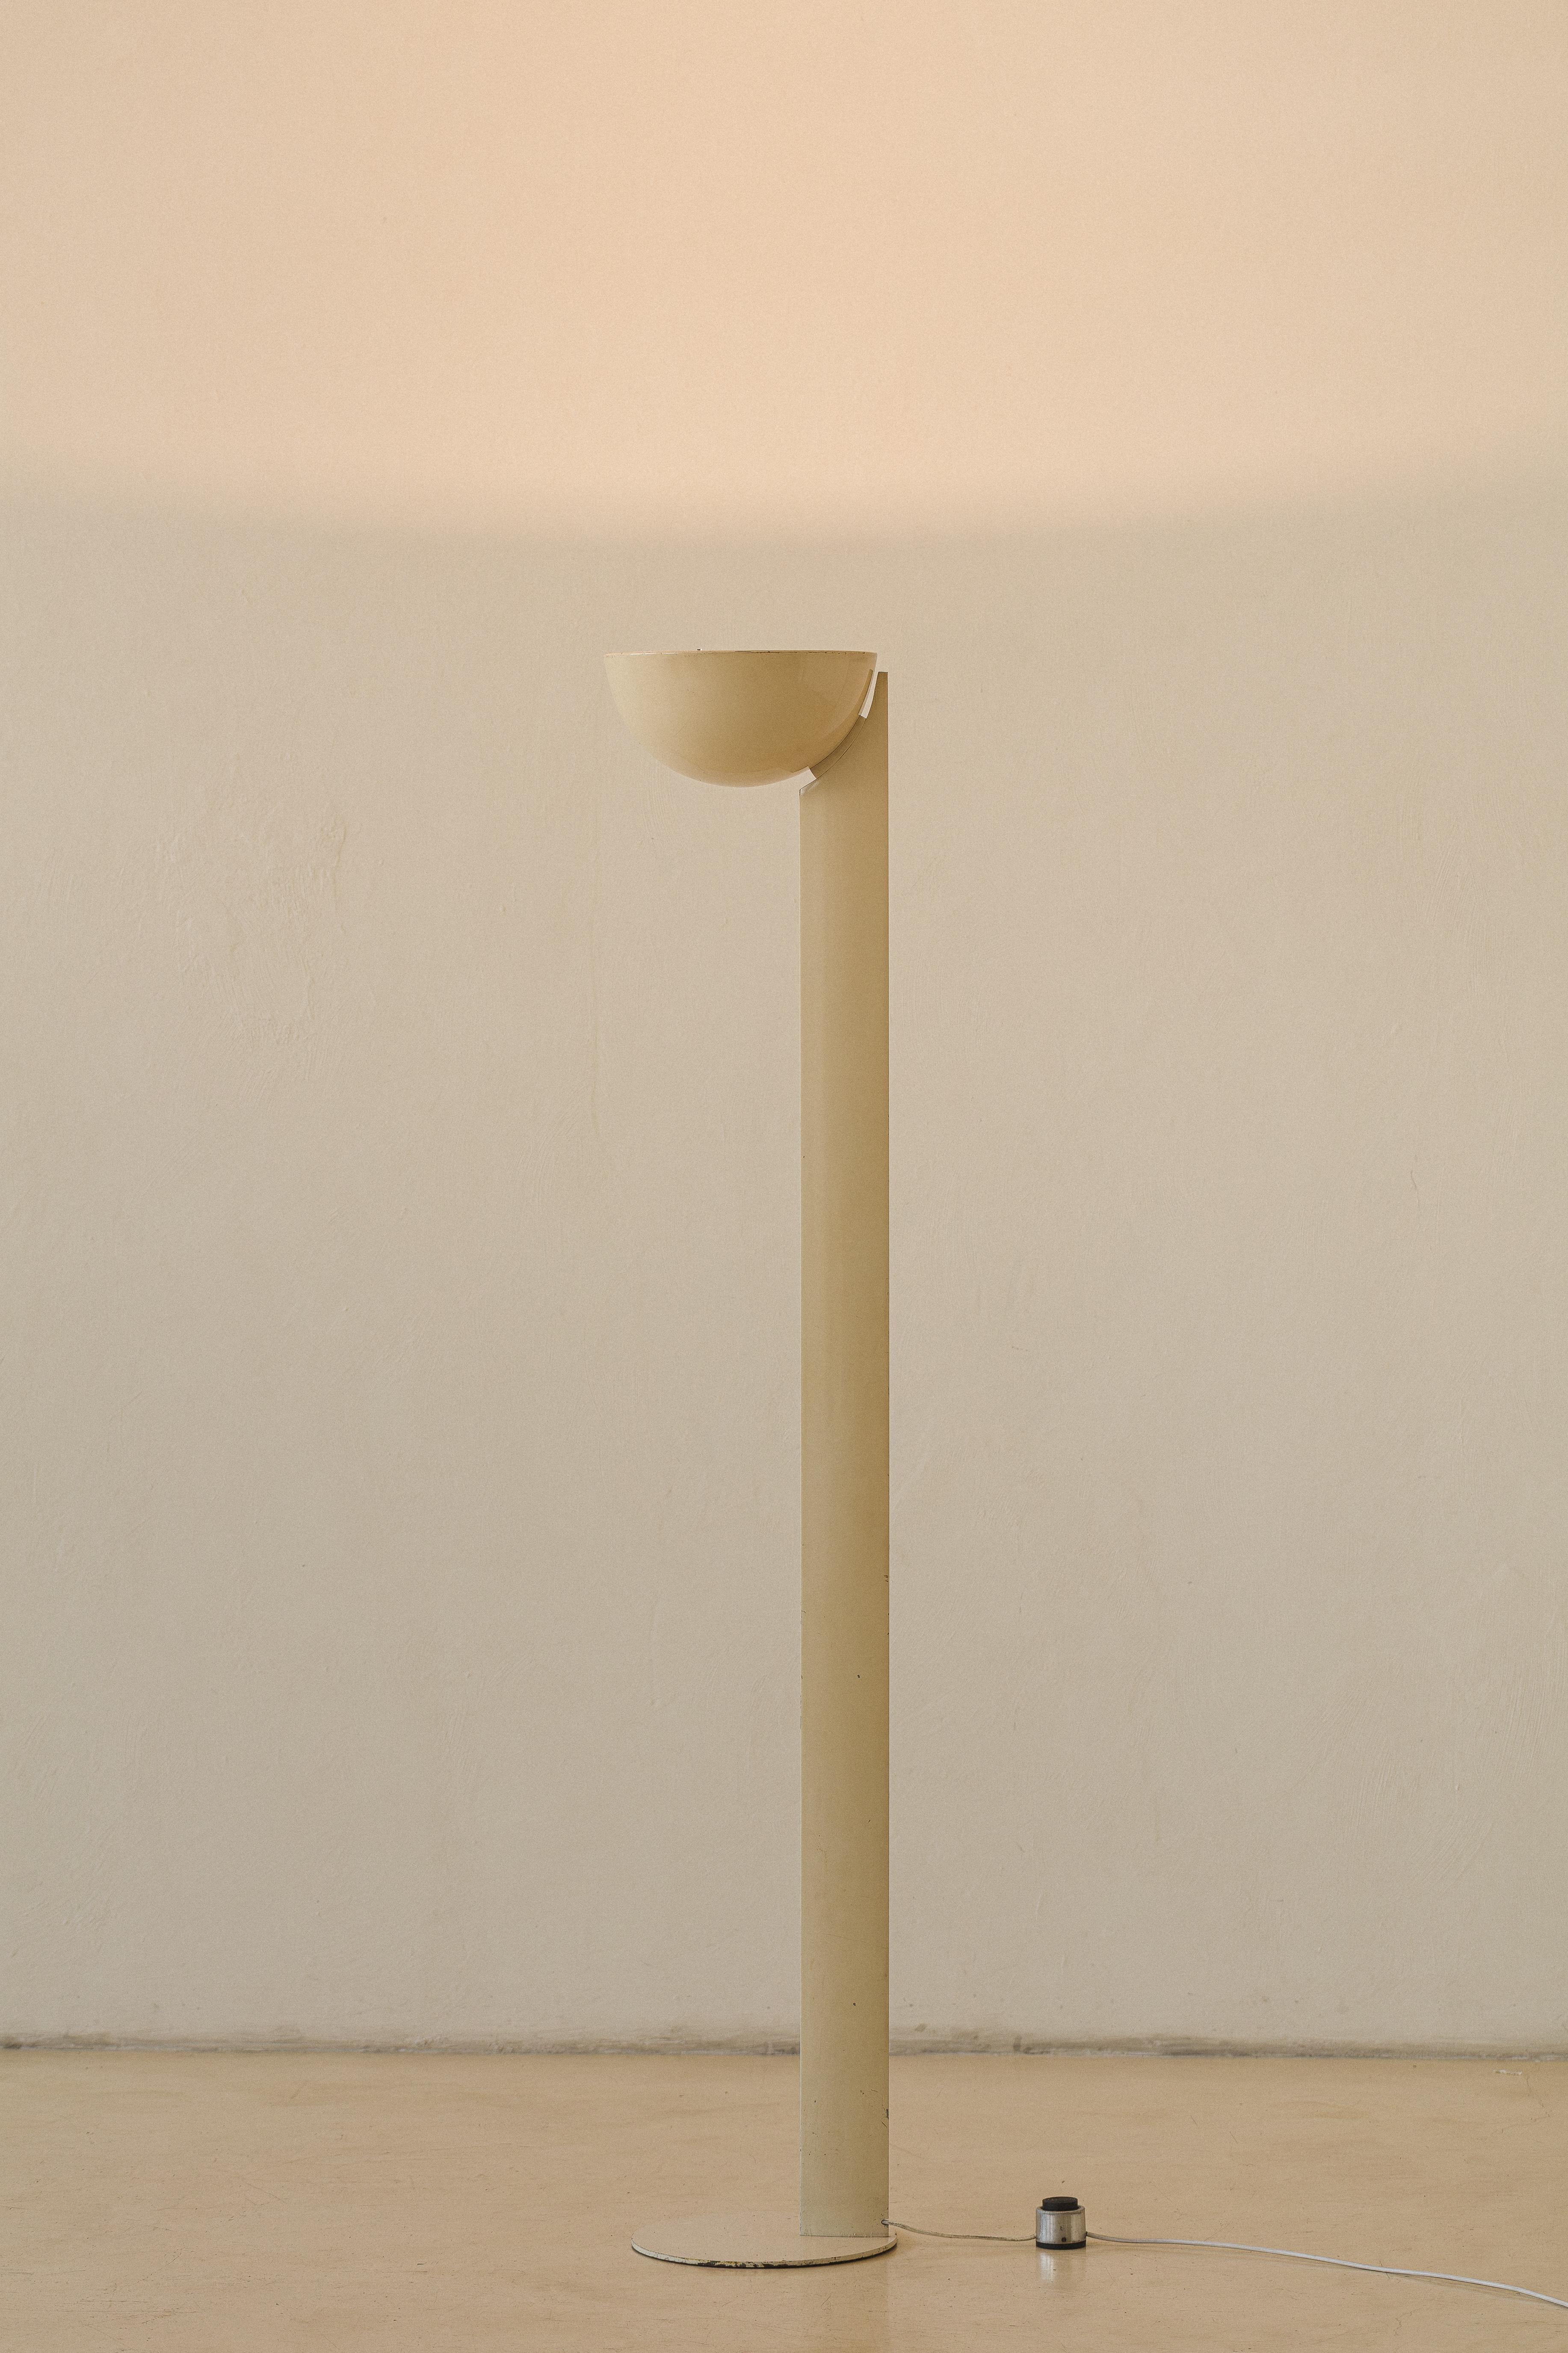 Diese Stehleuchte wurde von Enrico Furio (1909 - 2010) in den 1950er Jahren entworfen und von seinem Unternehmen Dominici hergestellt. Die aus Aluminium gefertigte Lampe ist im Originalzustand erhalten und verfügt über einen einzigartigen Turm und